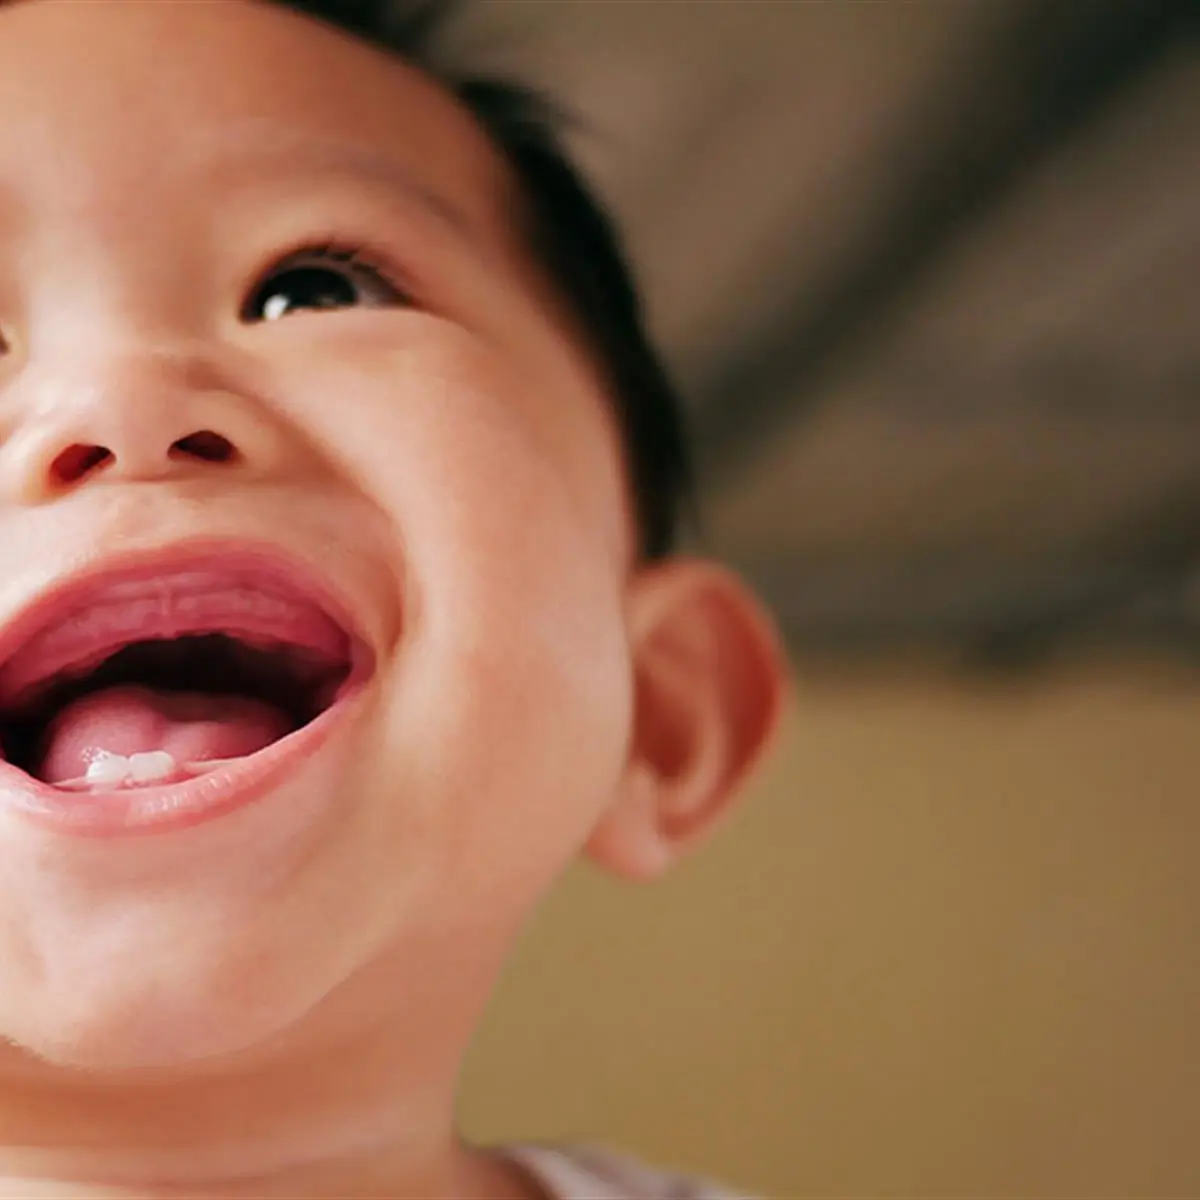 pasta de dientes para bebes de 1 año - Cómo cuidar los dientes de un niño de 1 año